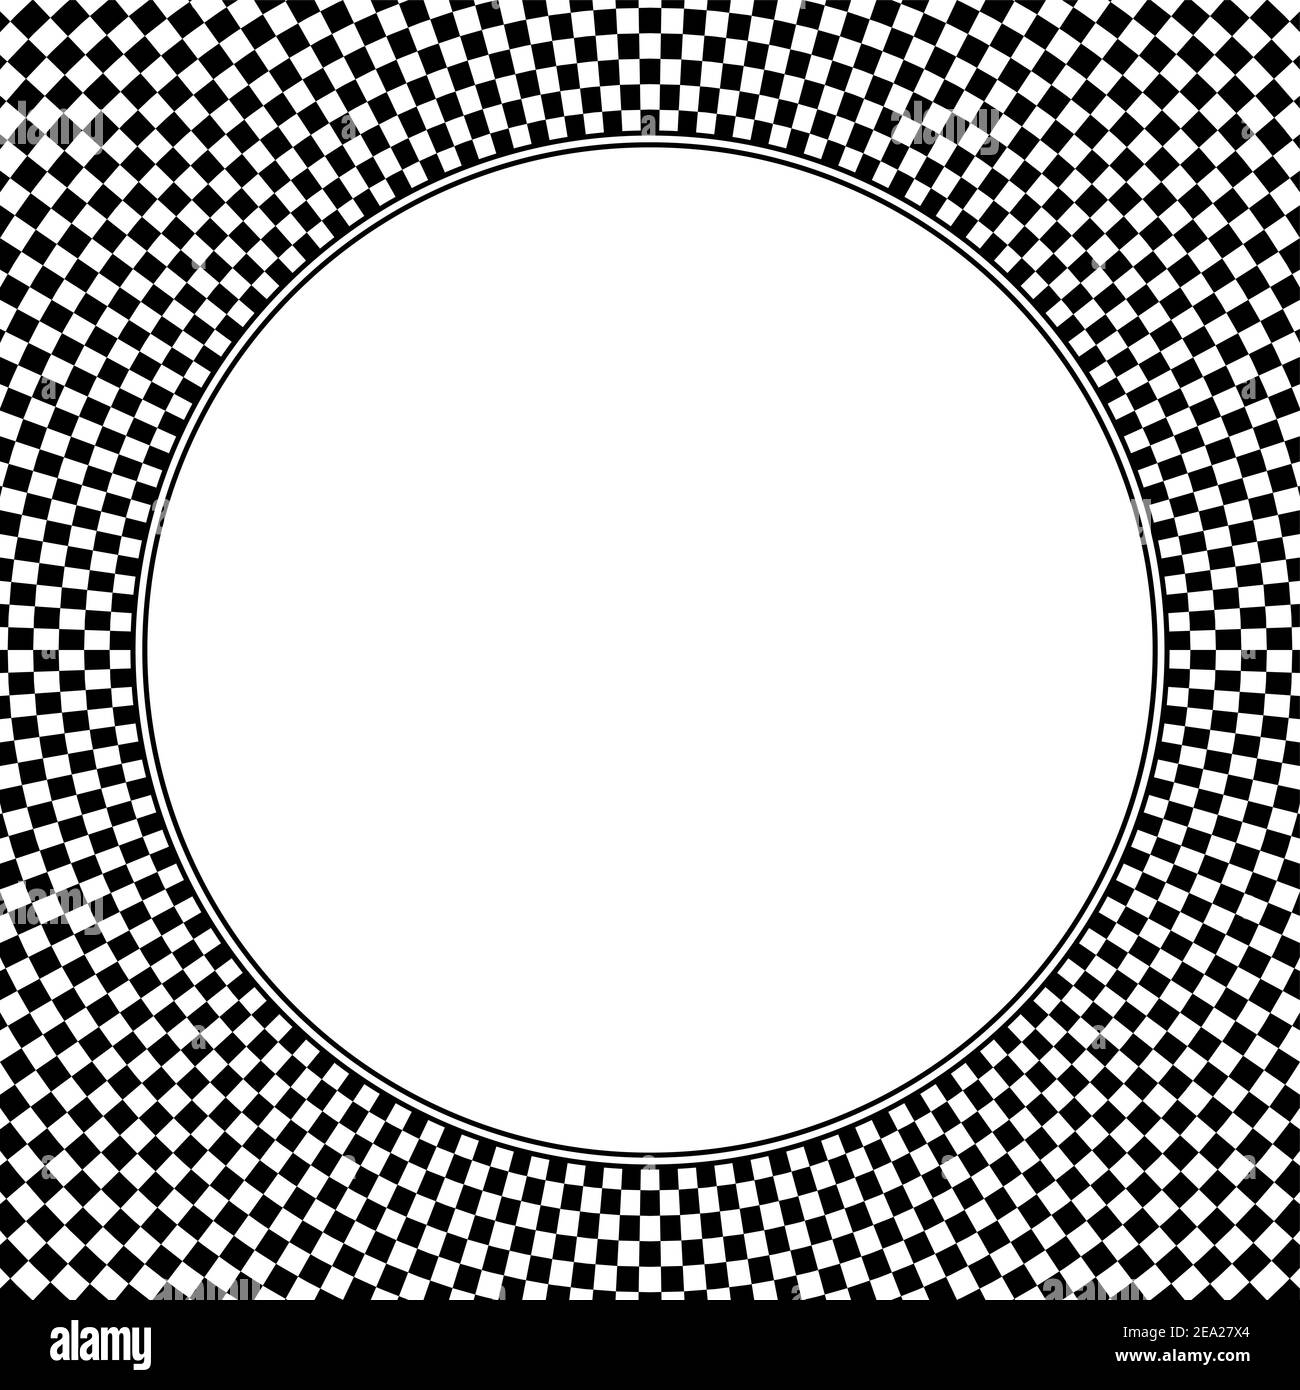 Sfondo del motivo a scacchiera a forma quadrata, con cerchio bianco vuoto al centro. Motivo a scacchi, realizzato in quadratini bianchi e neri. Foto Stock